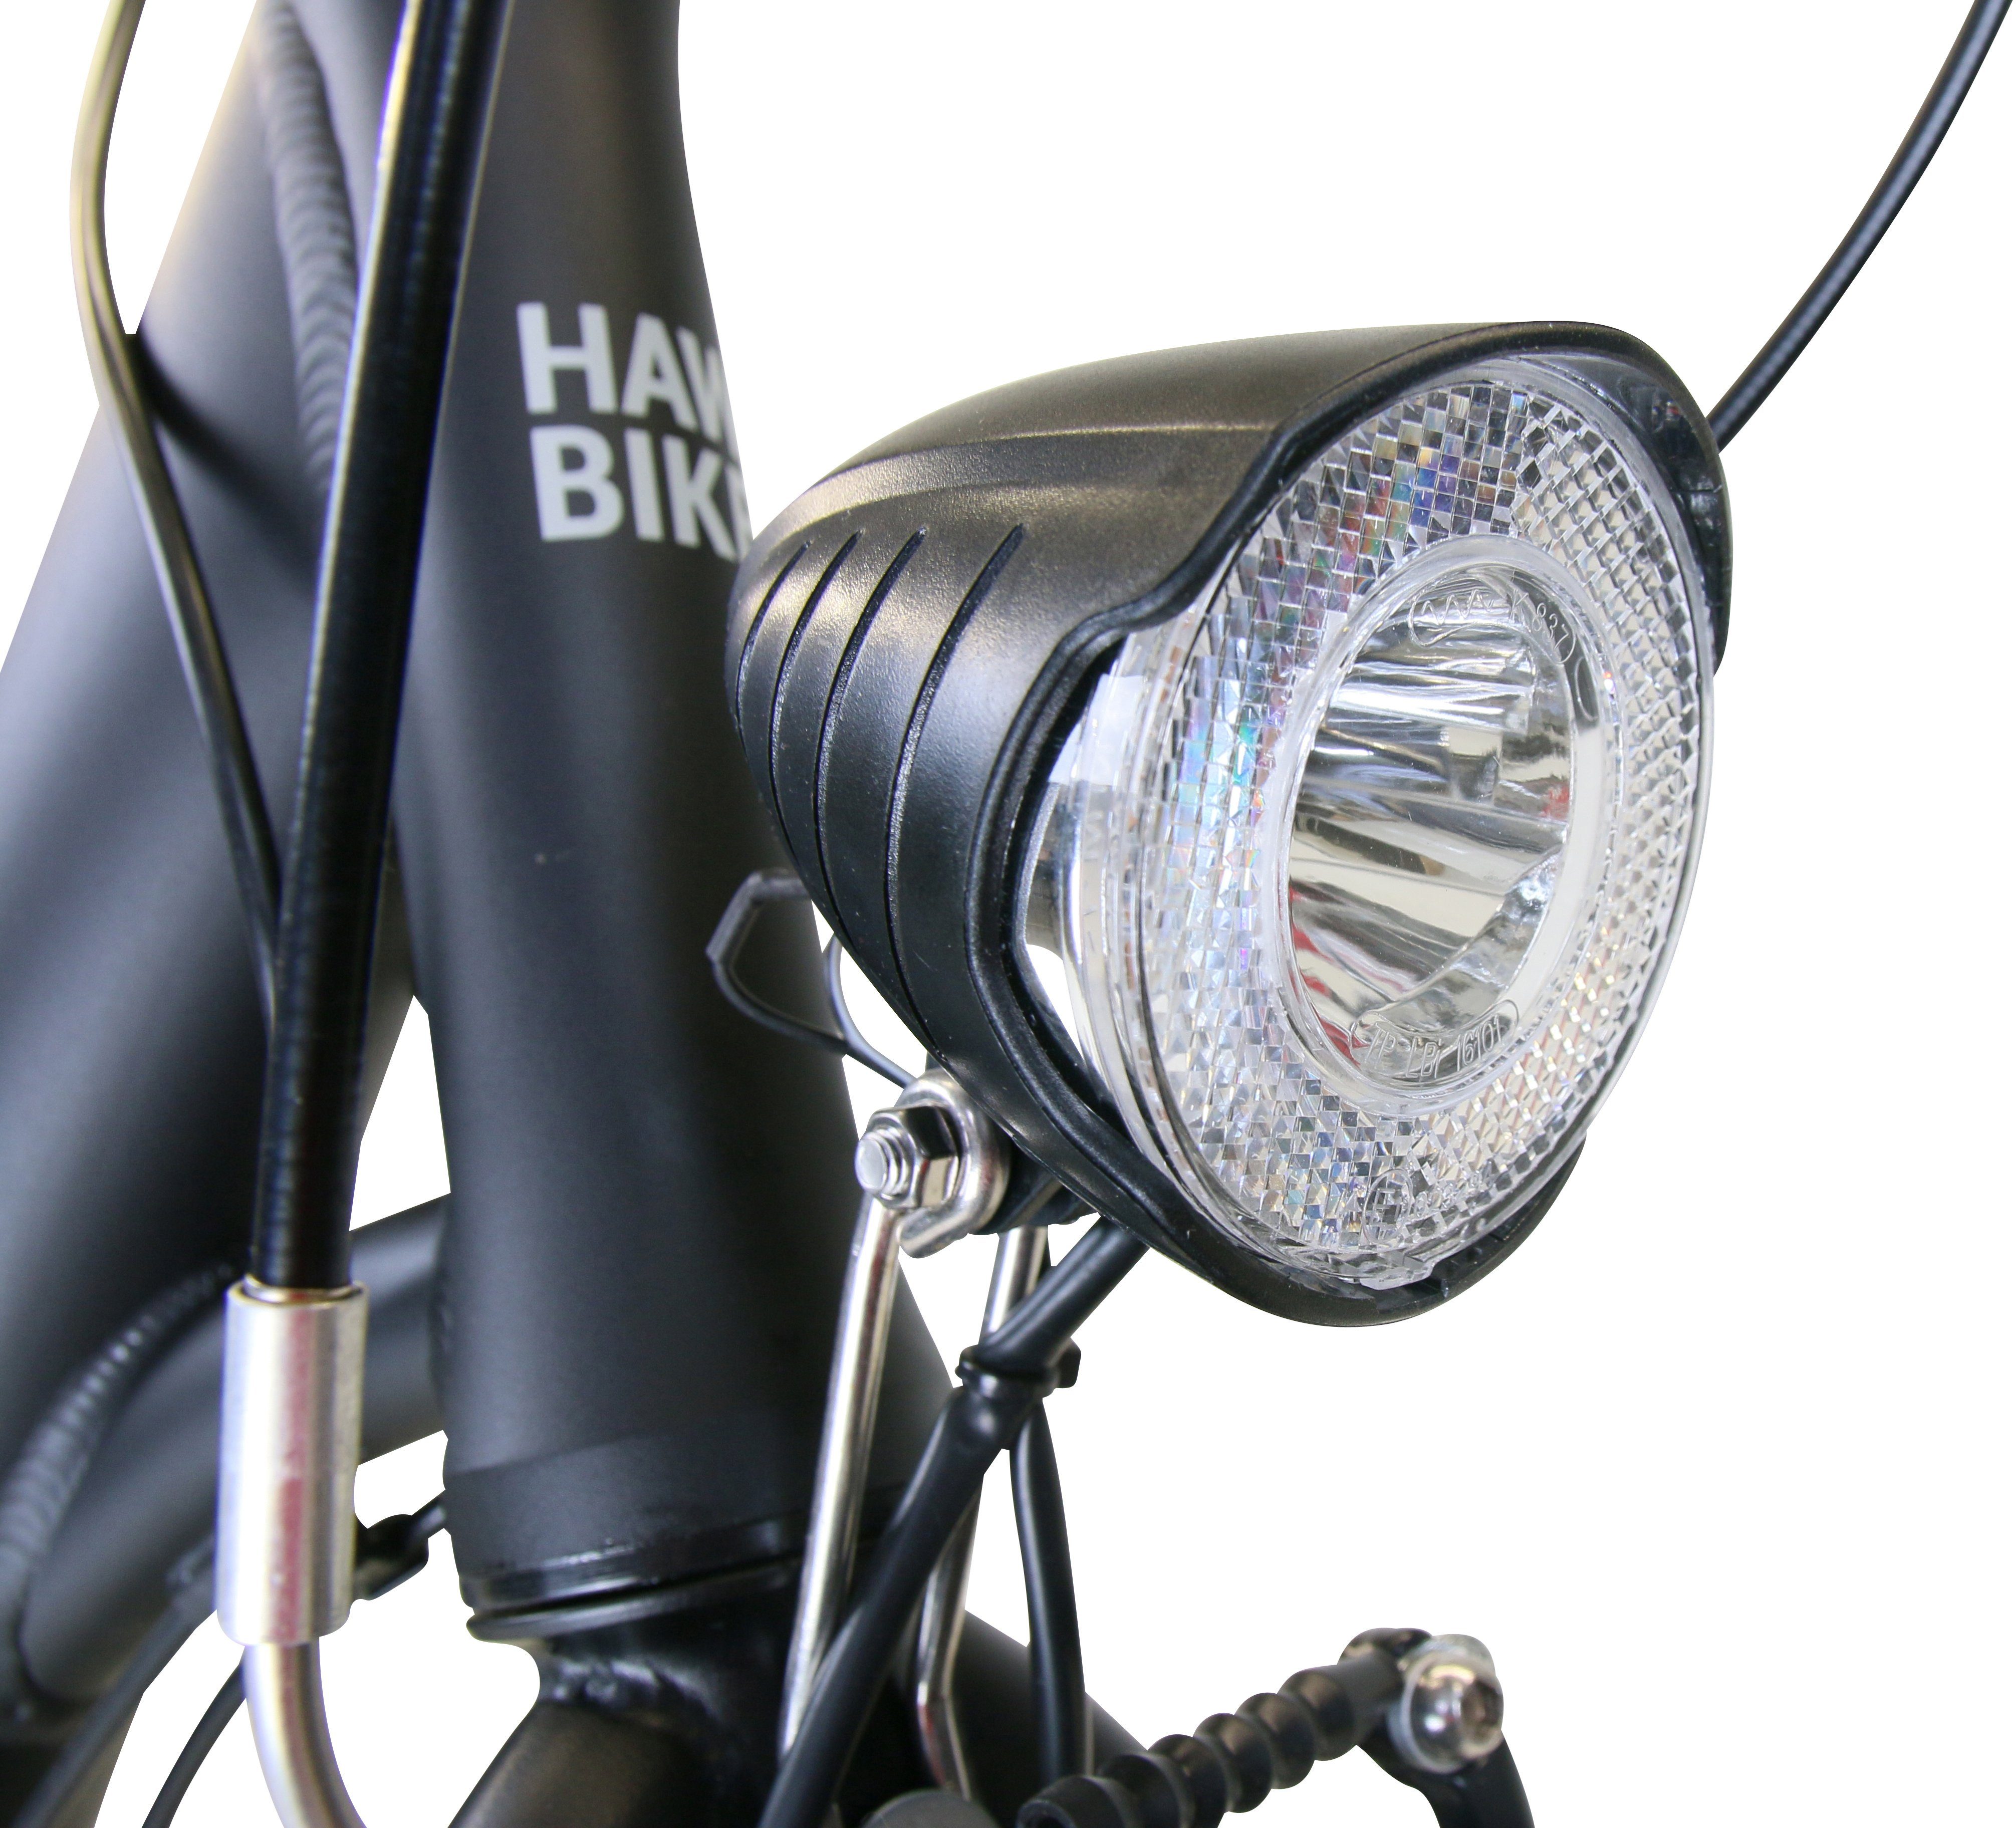 Shimano Gang Cityrad 7 Schaltwerk Easy Nexus Bikes HAWK Black, Wave HAWK City